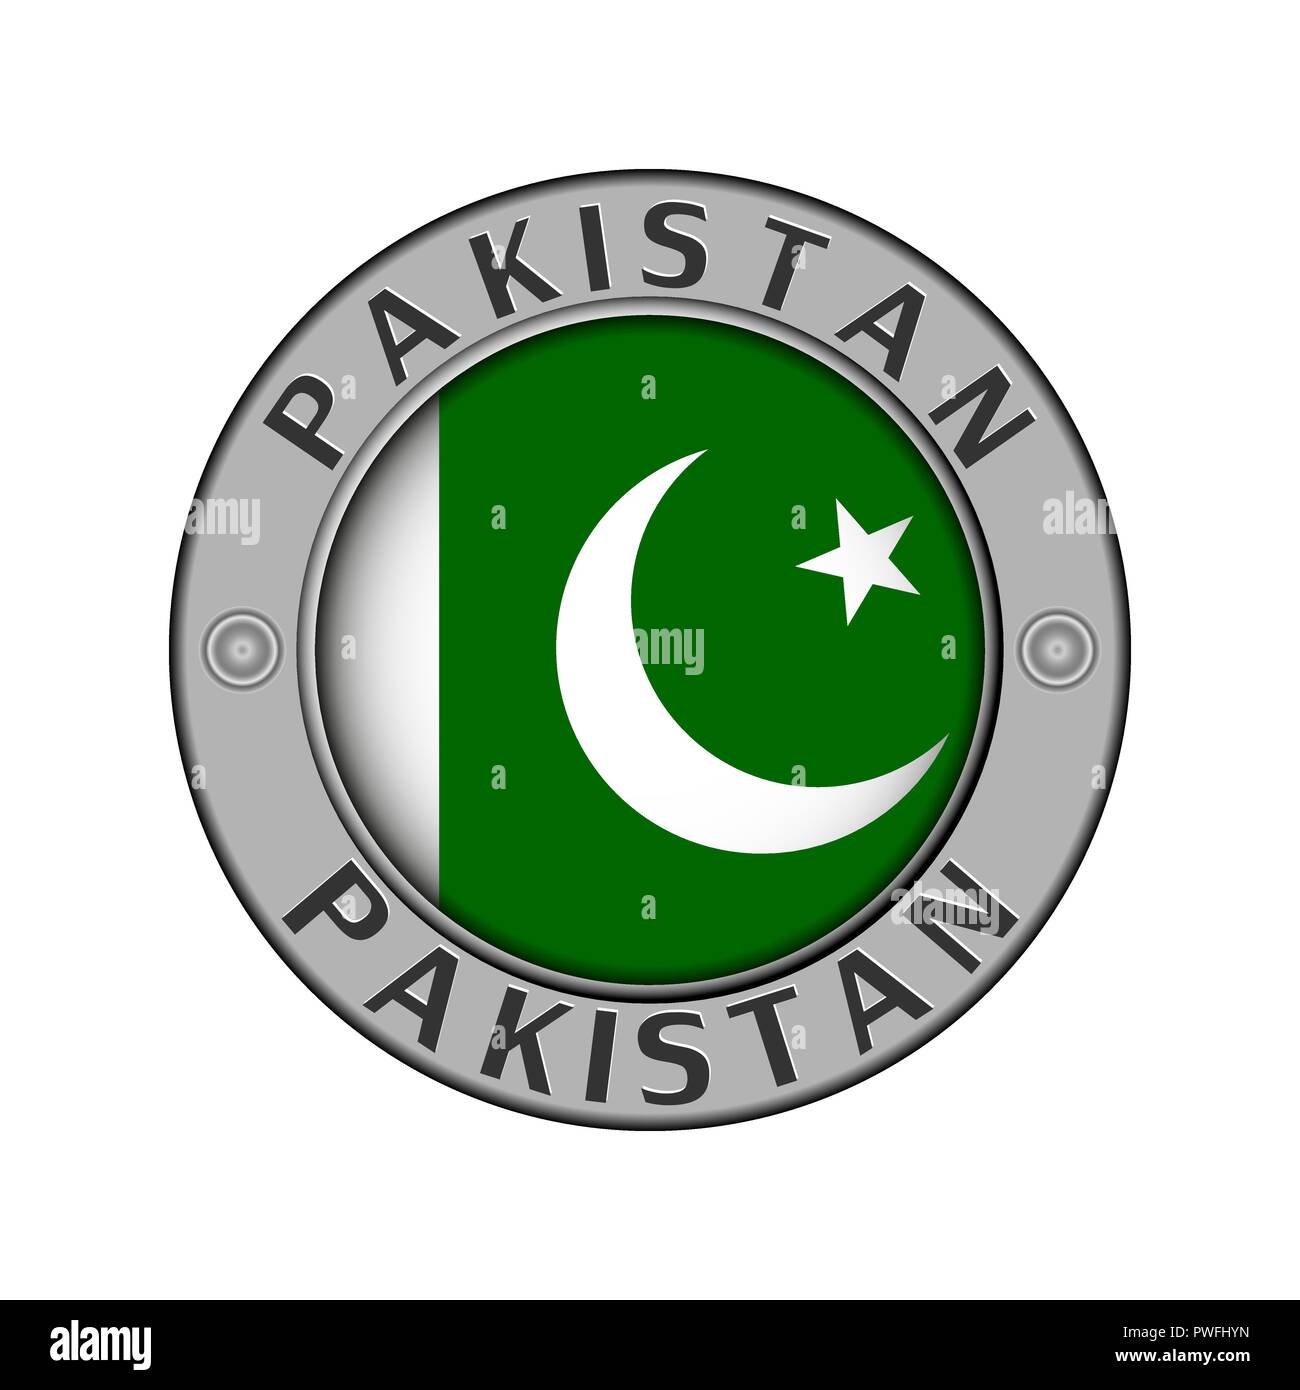 Rotondo di metallo medaglione con il nome del paese di Pakistan e un indicatore rotondo nel centro Illustrazione Vettoriale